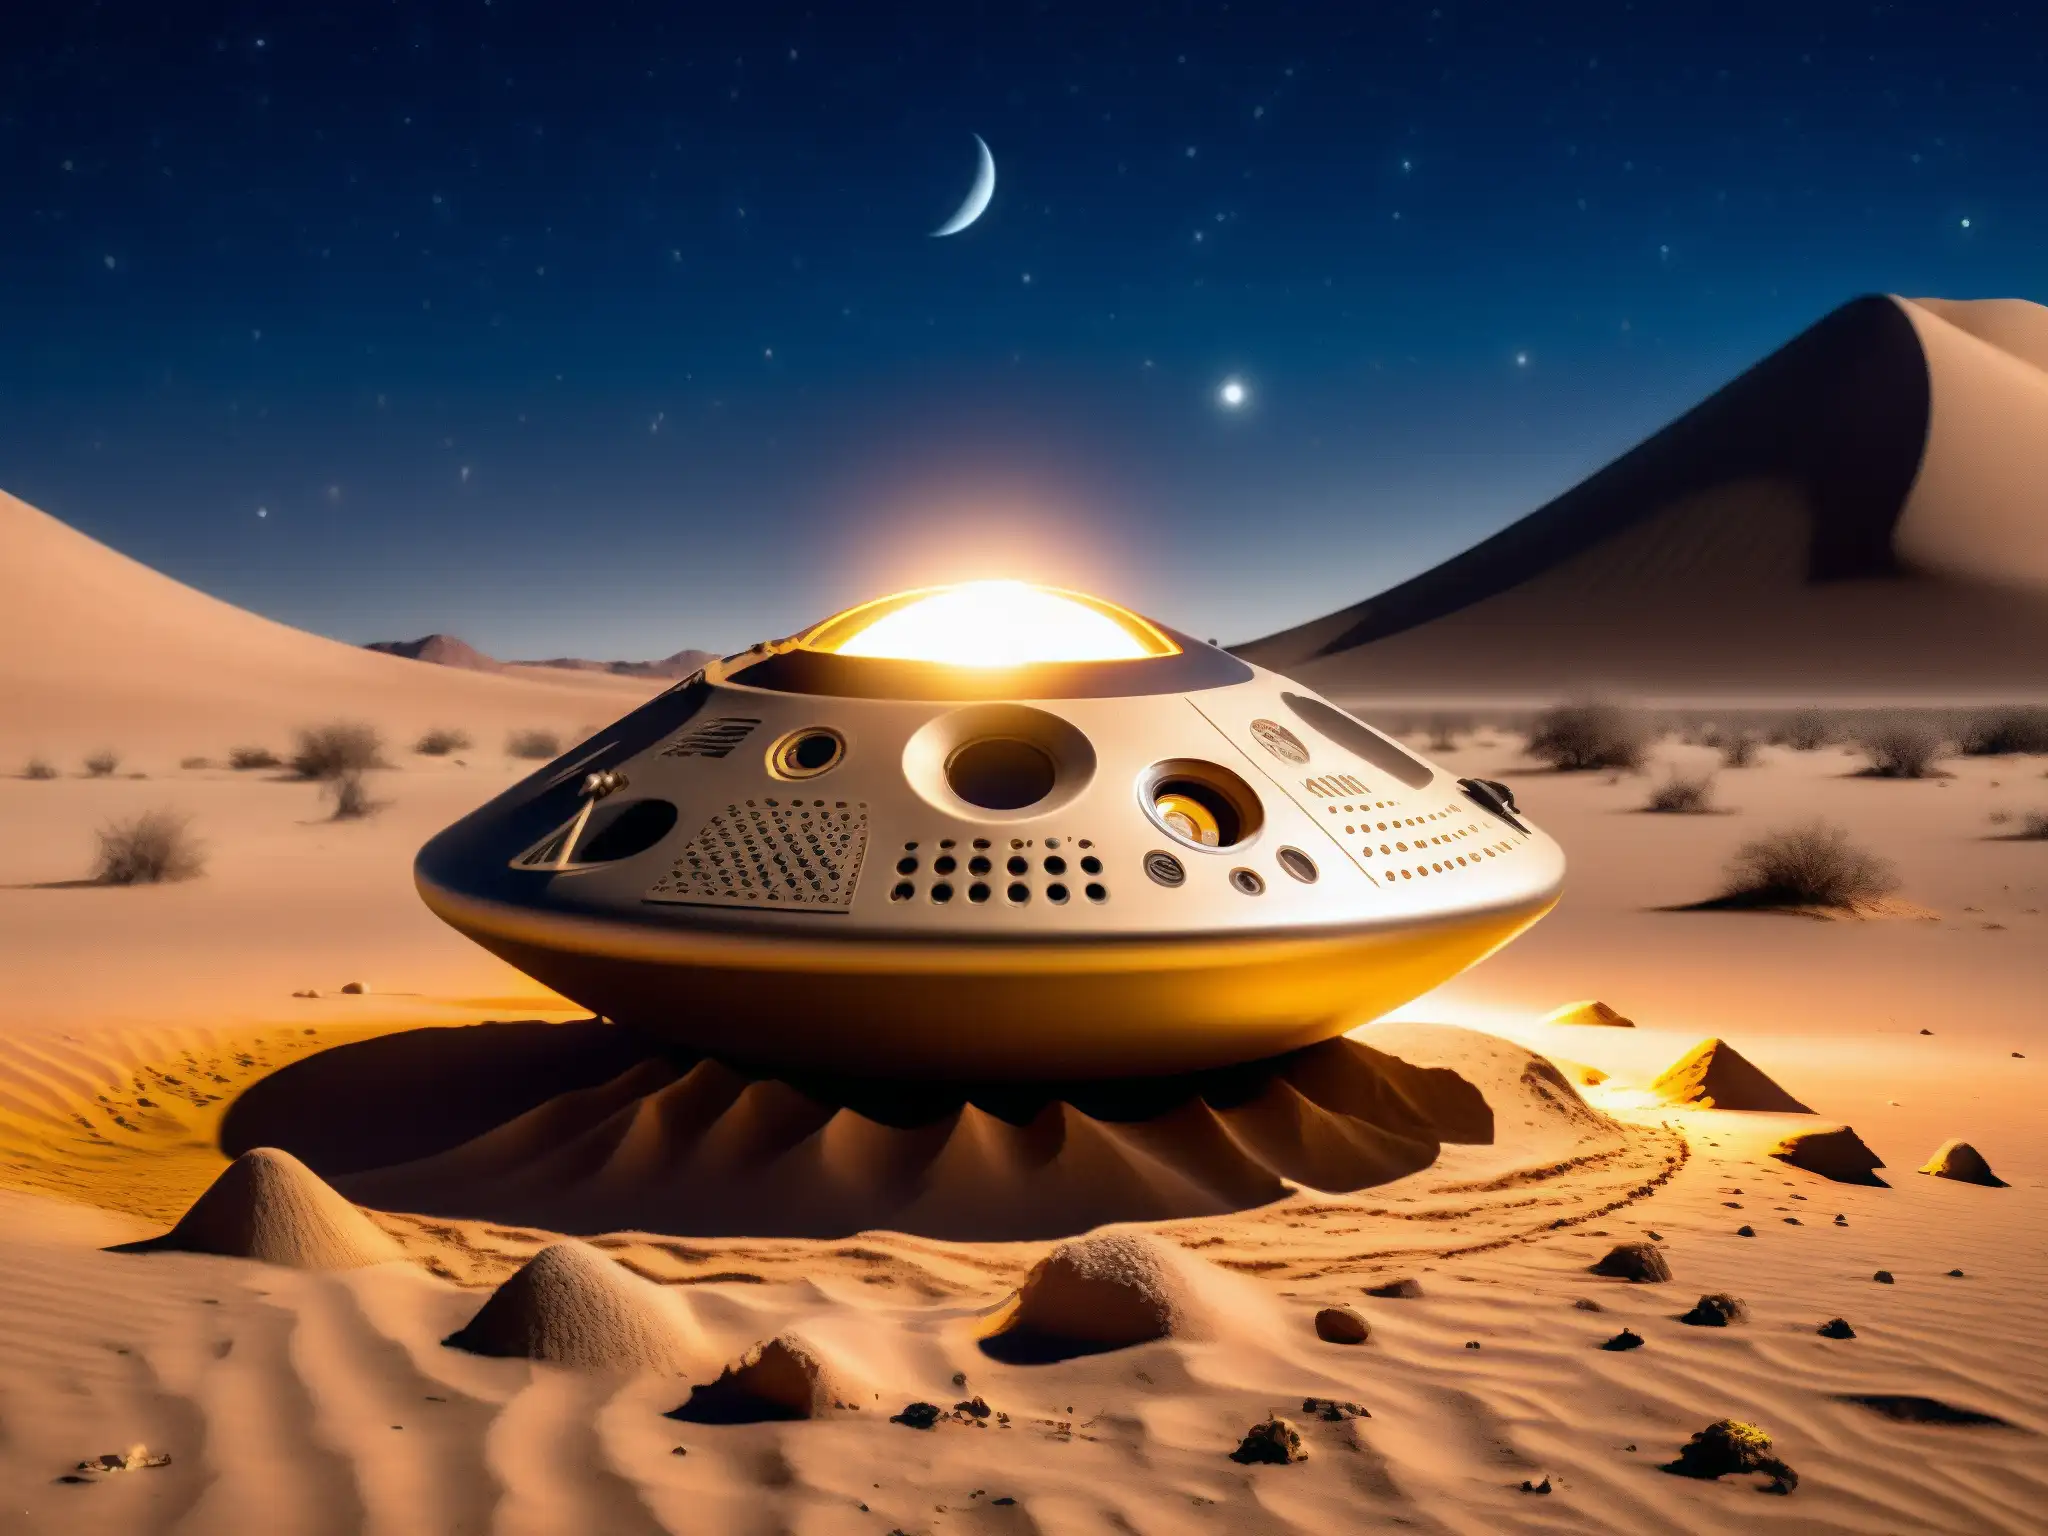 Soldados investigan un objeto misterioso bajo la luna en el desierto